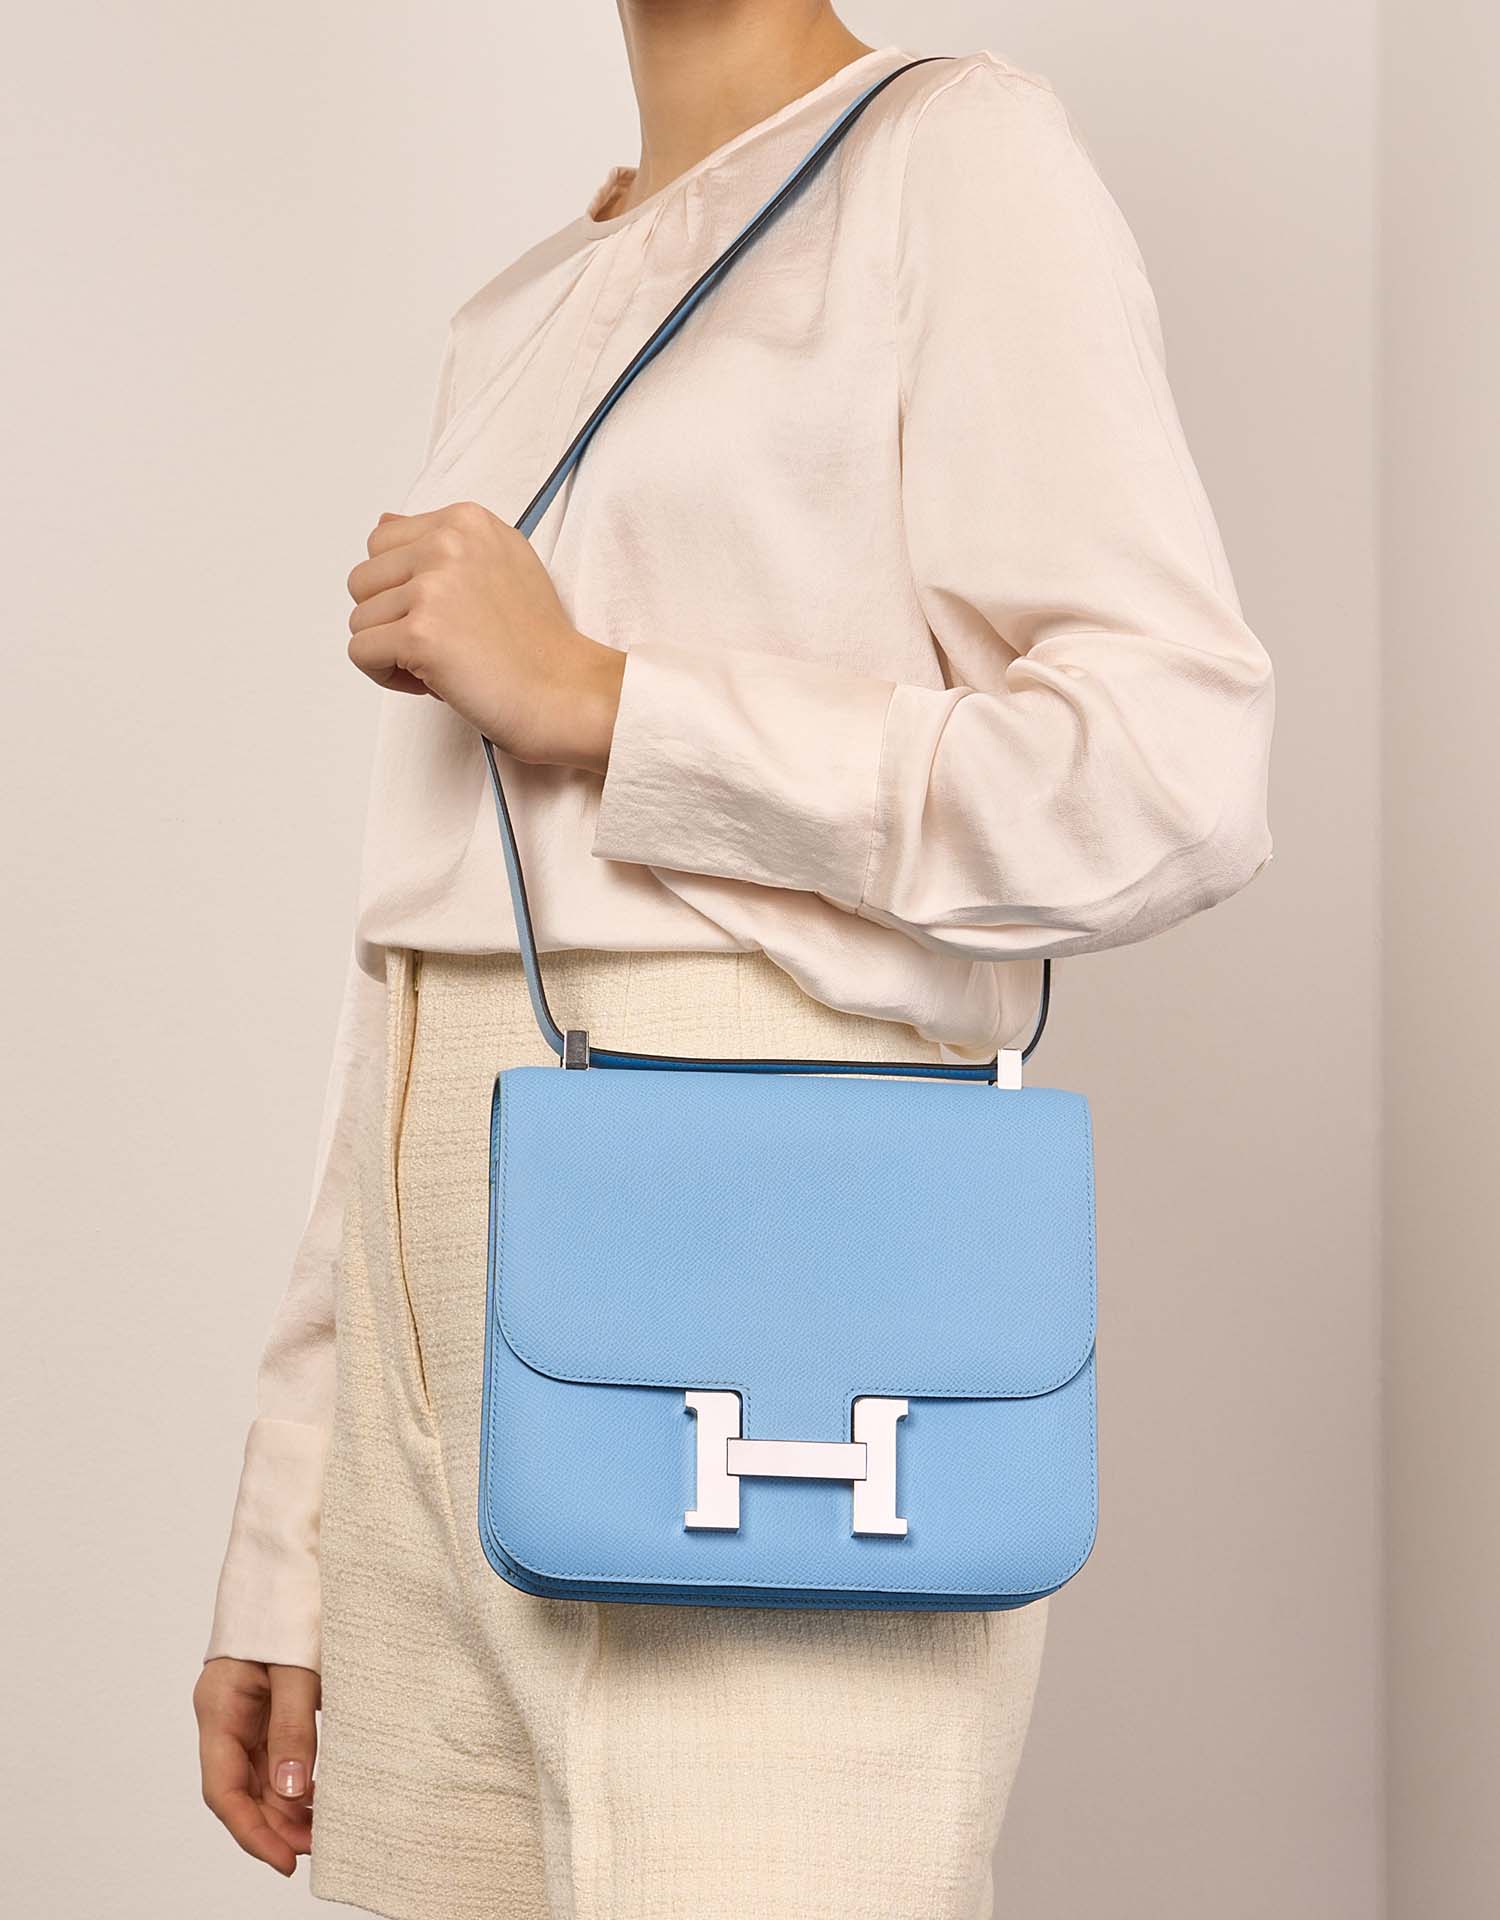 Hermès Constance 24 Celeste Größen Getragen | Verkaufen Sie Ihre Designer-Tasche auf Saclab.com